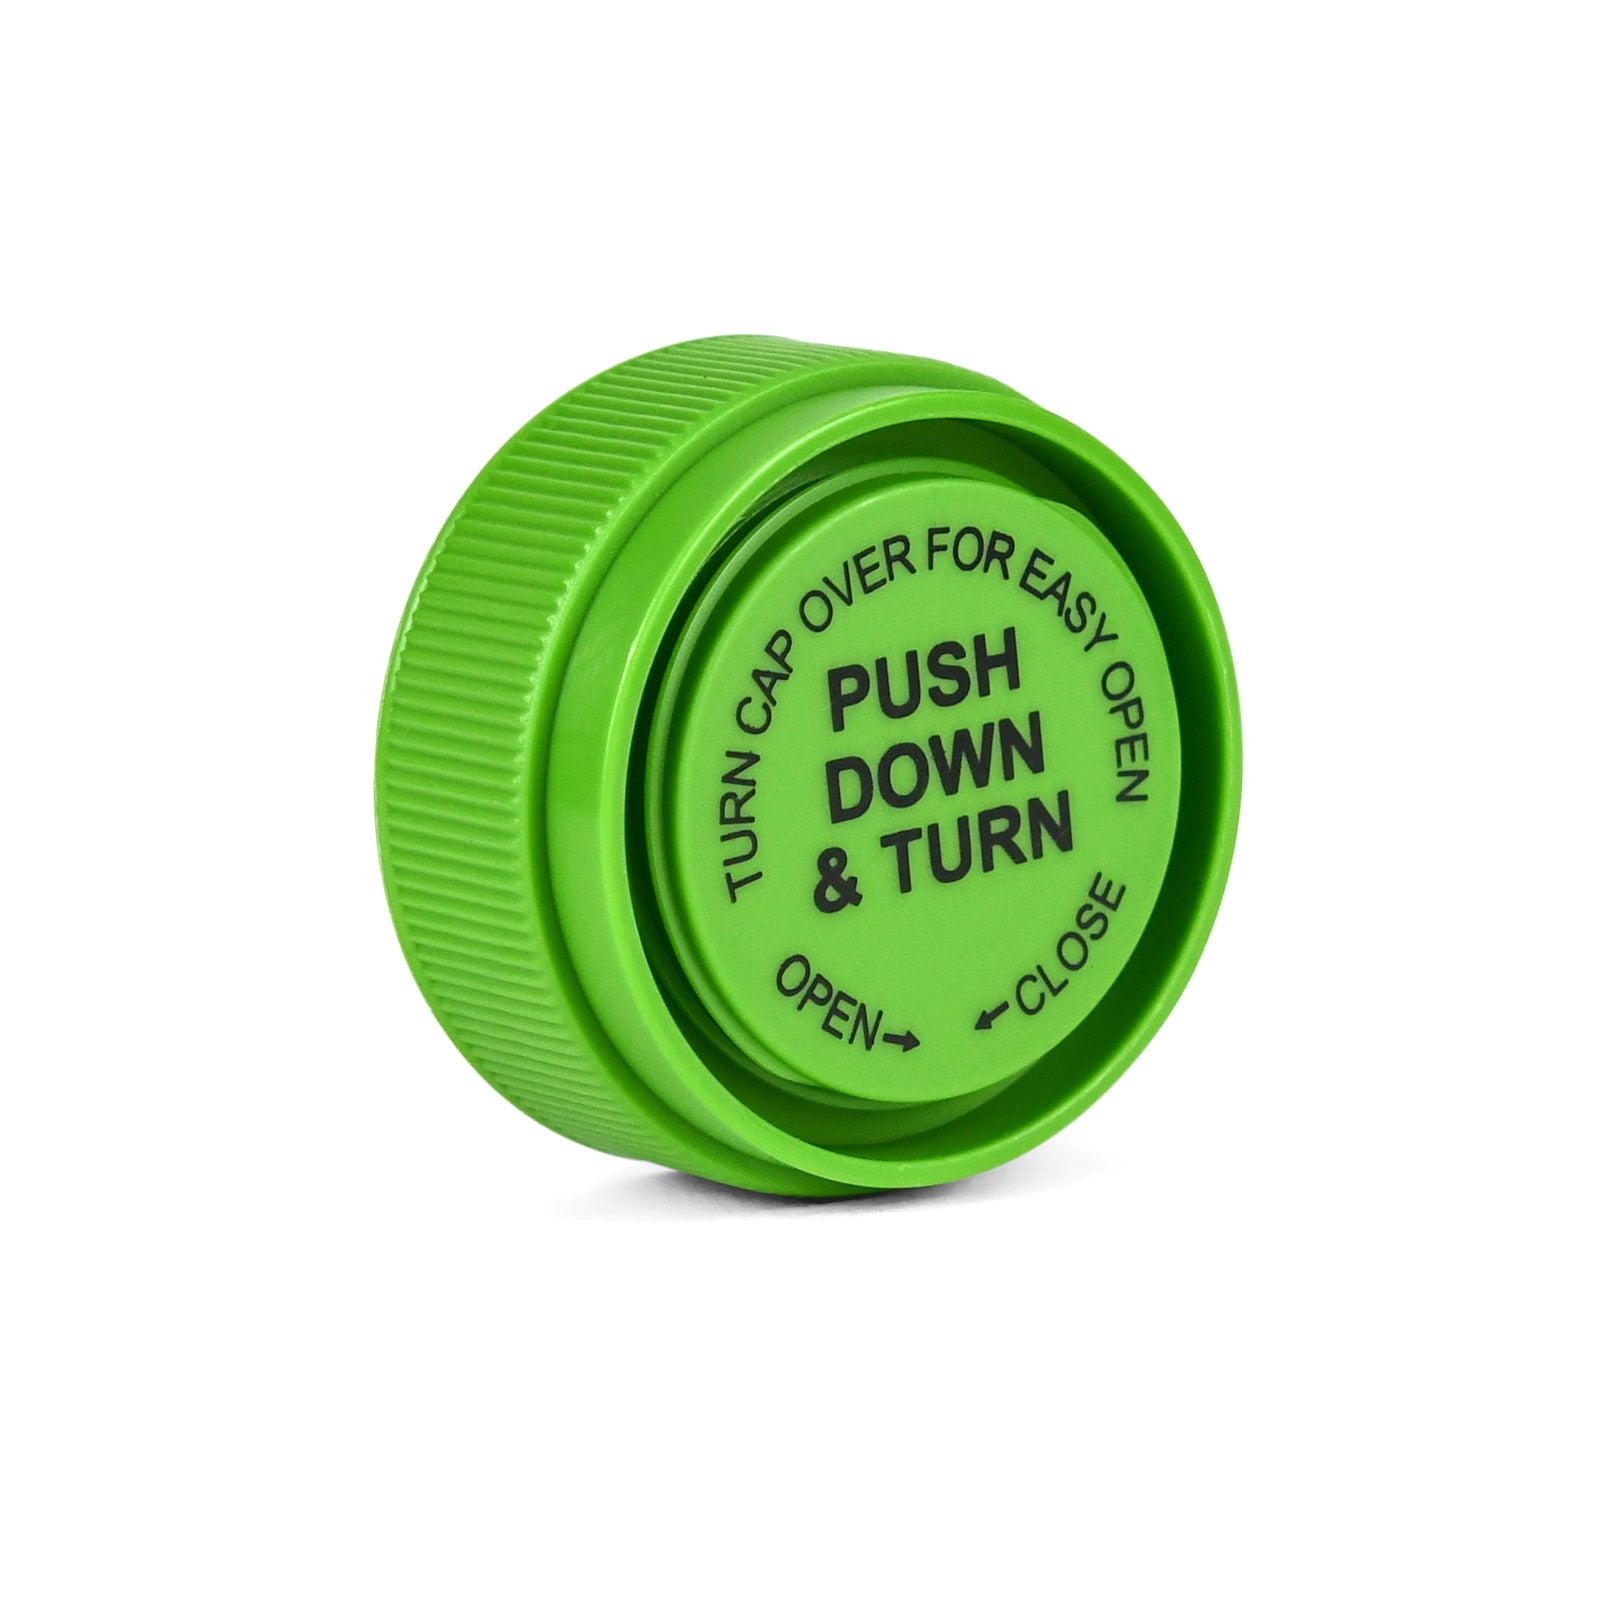 13 Dram Reversible Cap Opaque Green - 1 Count